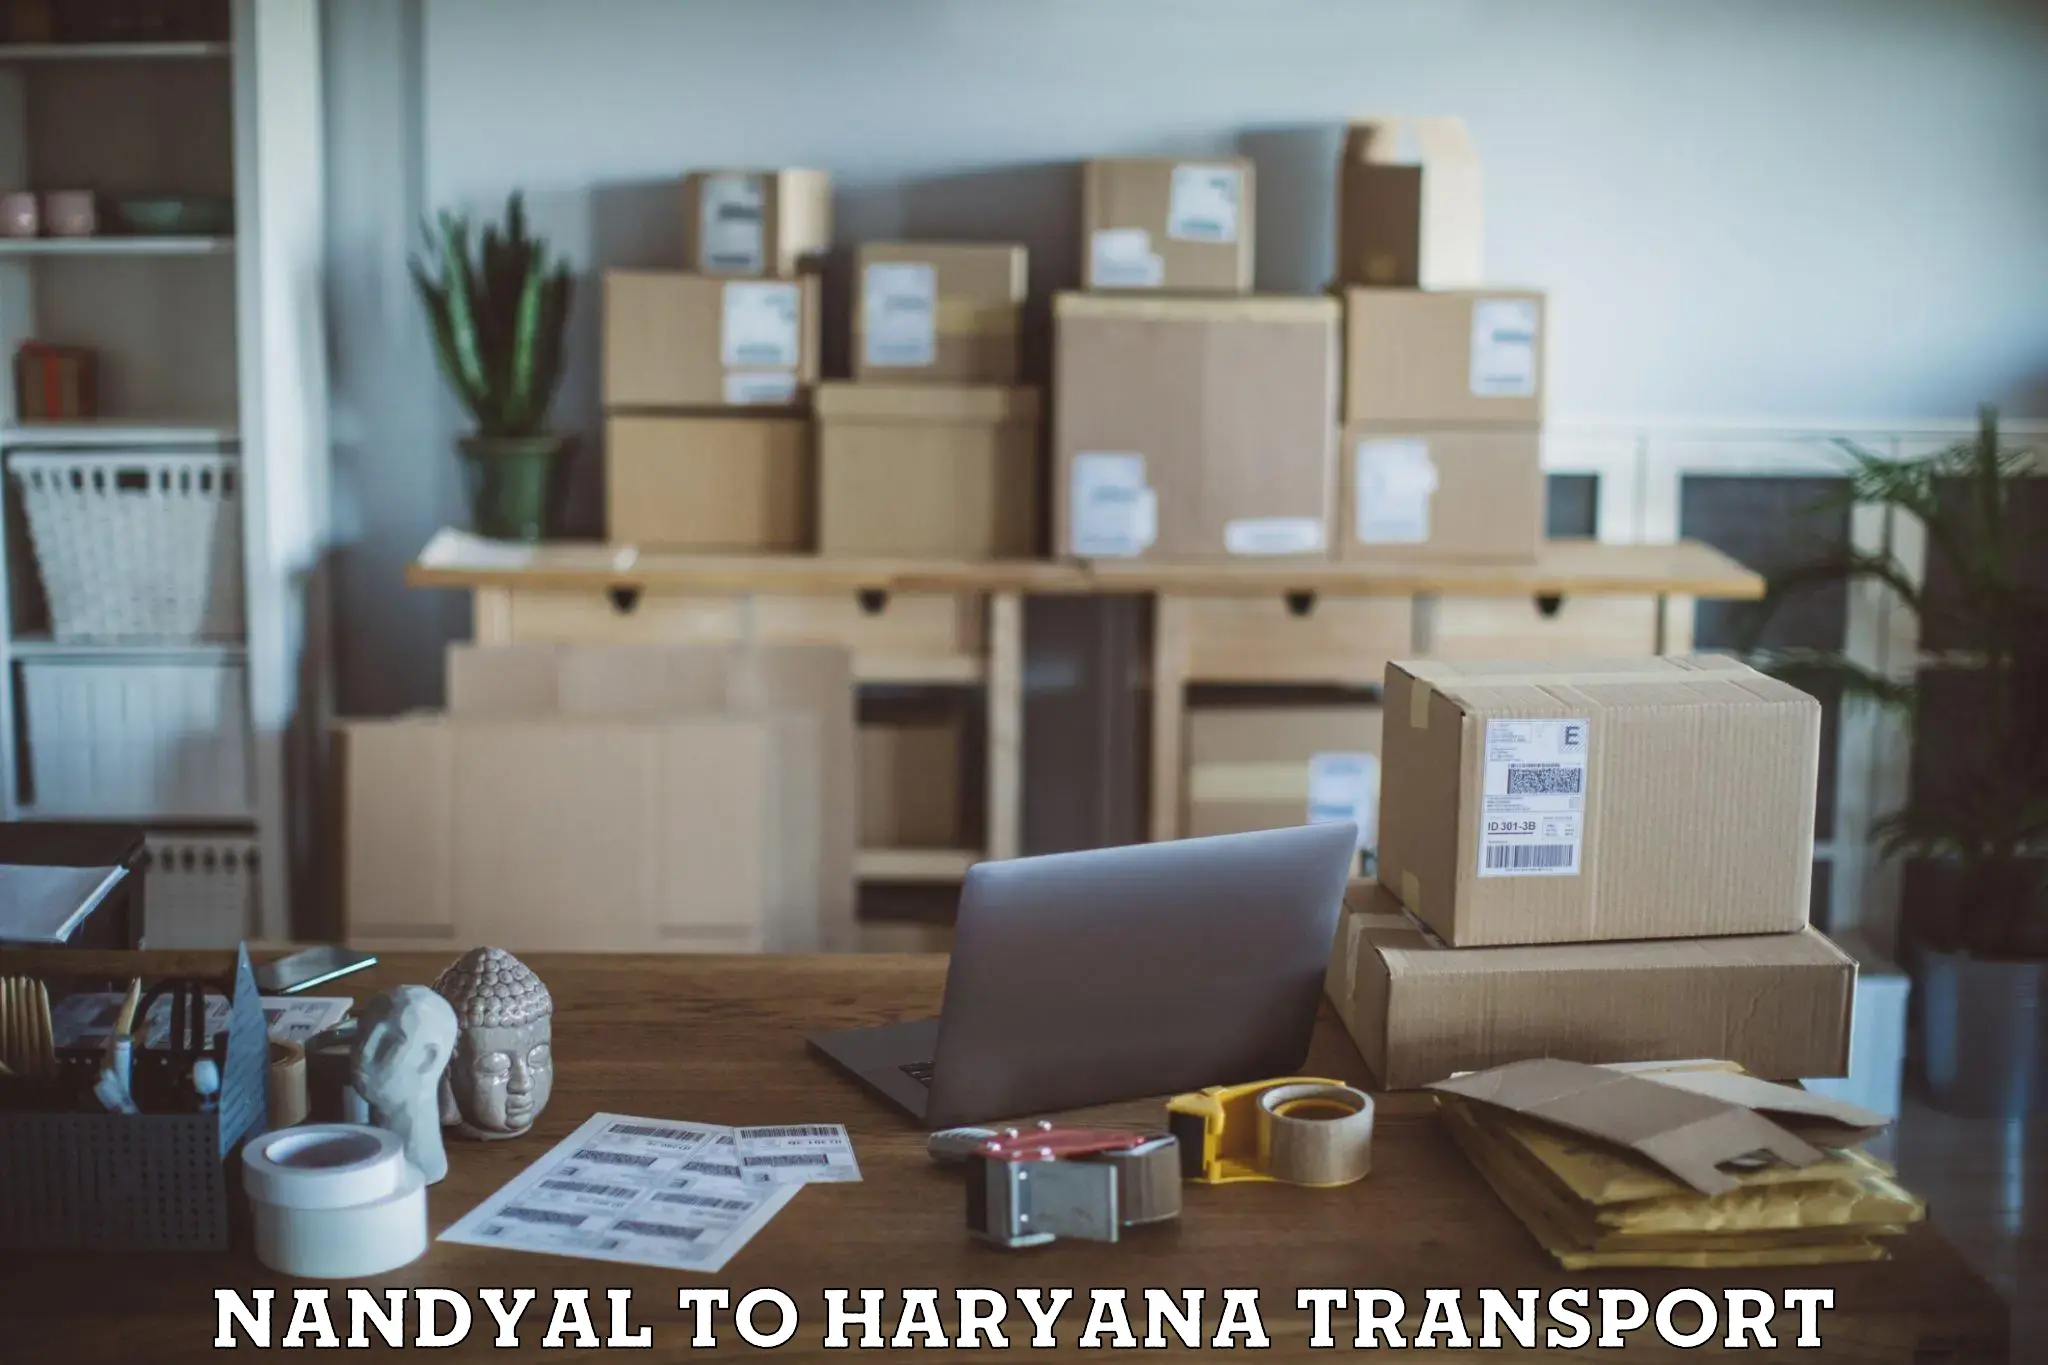 Online transport service Nandyal to Hisar